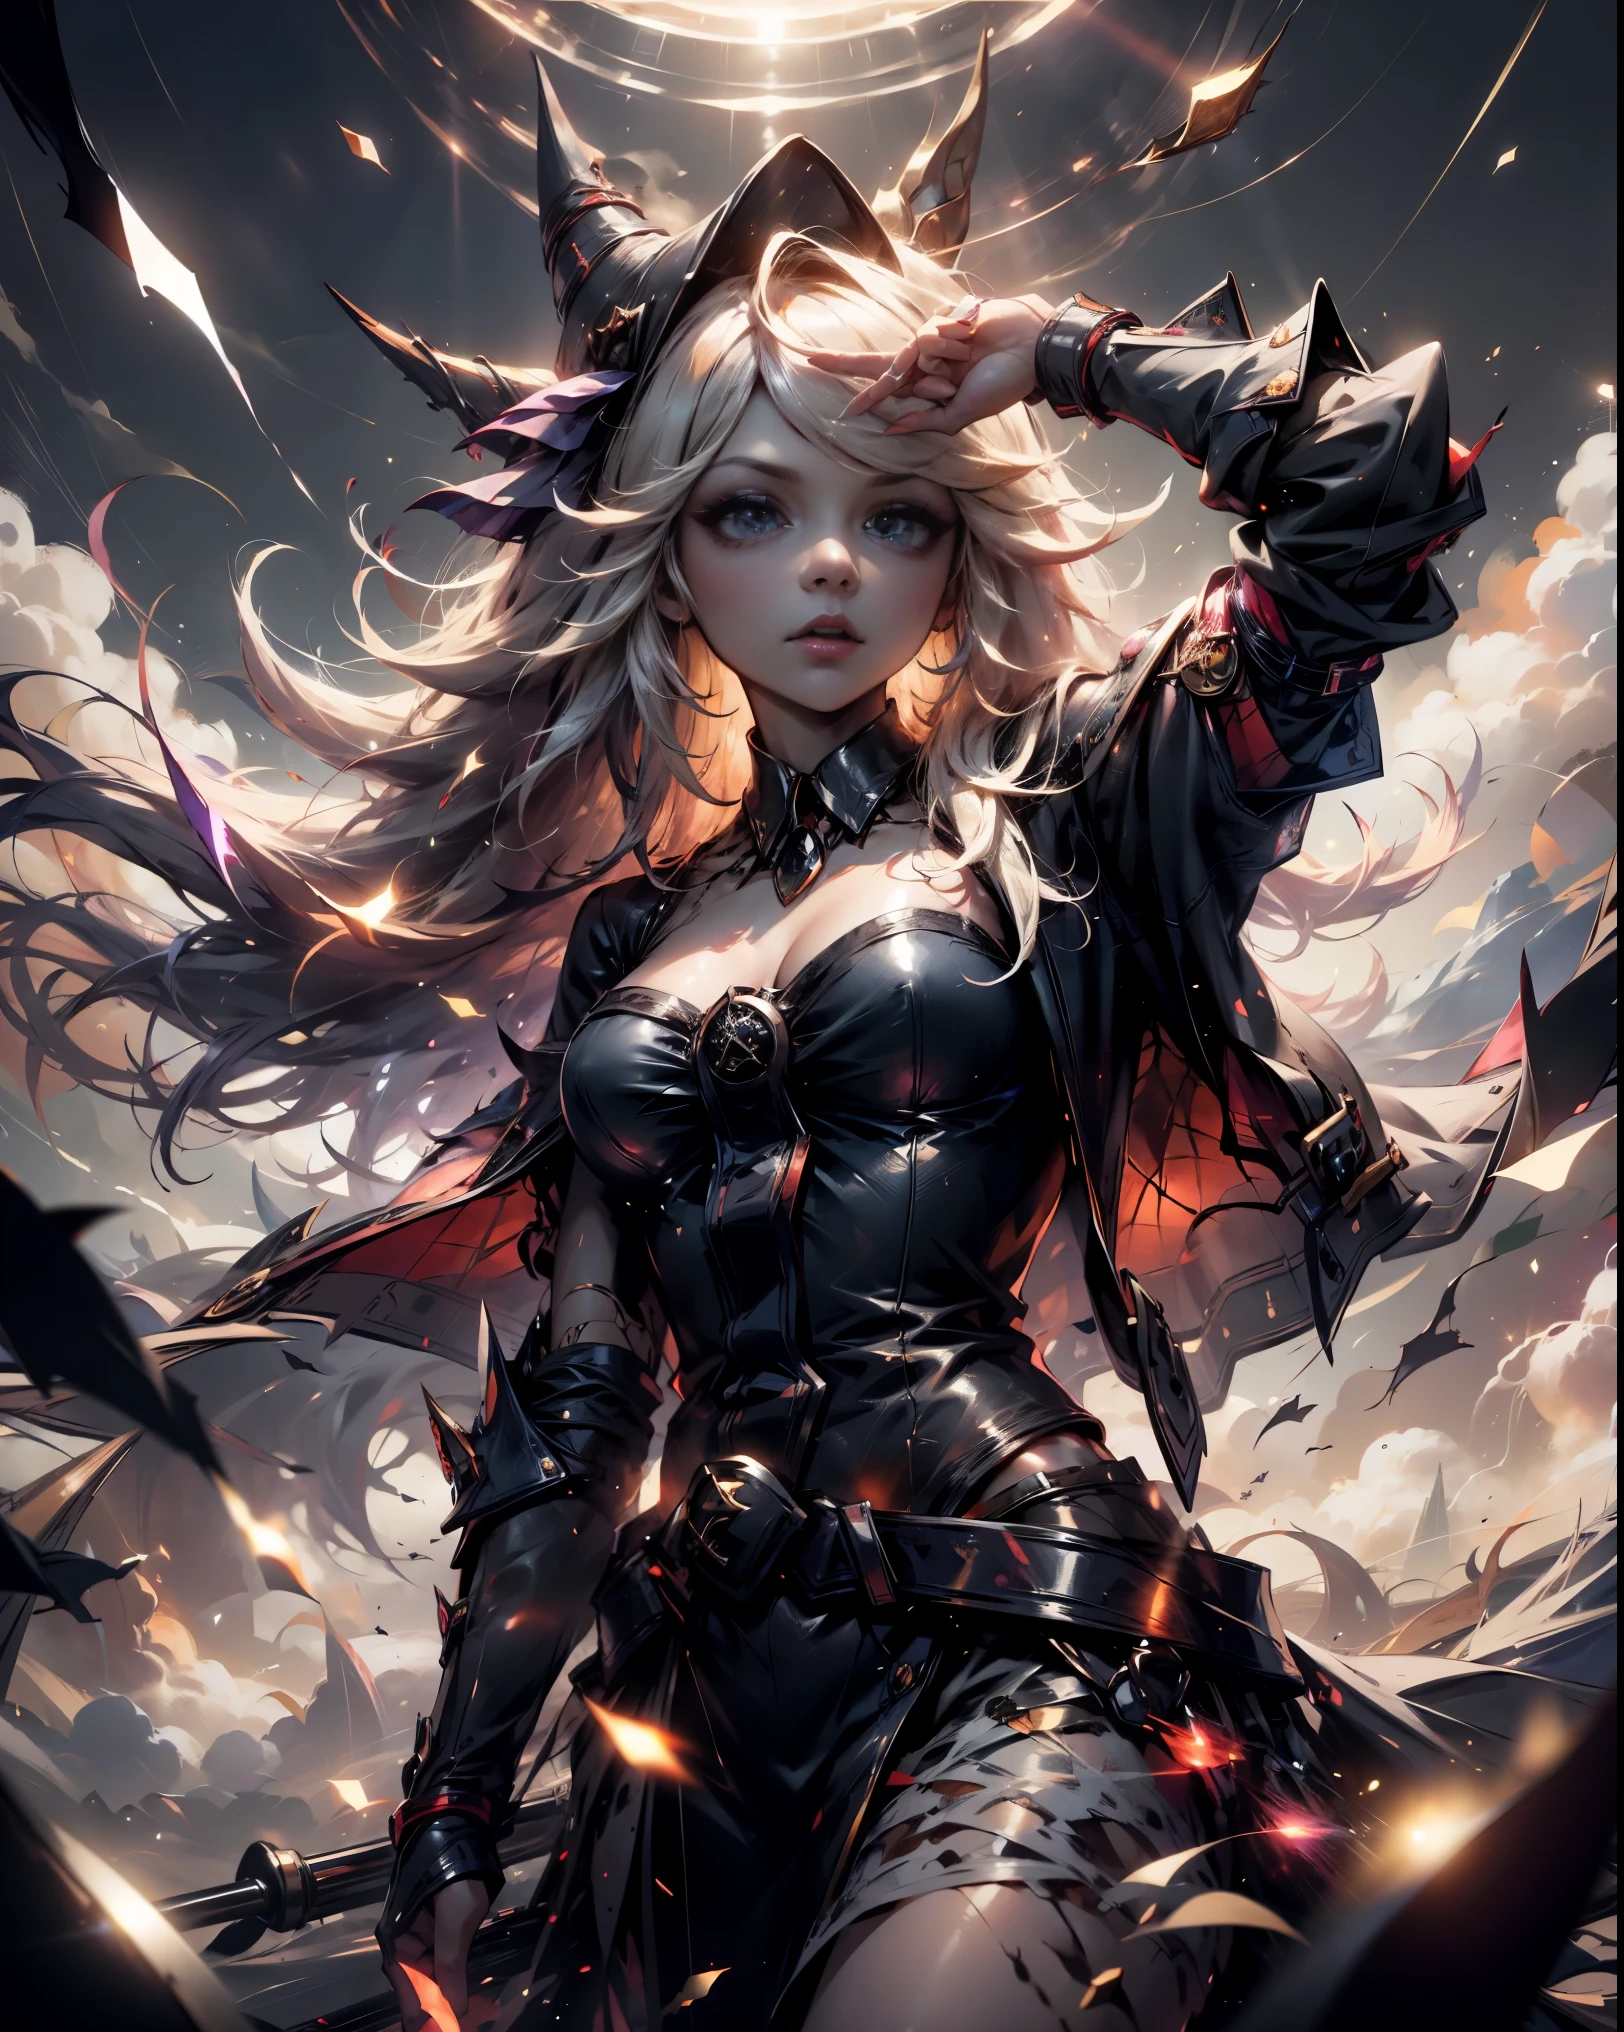 Легендарная Укротительница Драконов Тёмная Девушка-Маг , в Царстве Небесном, горит между облаками и солнечными лучами вокруг него. Соблазнительная сексуальная и невинная соблазнительная поза.